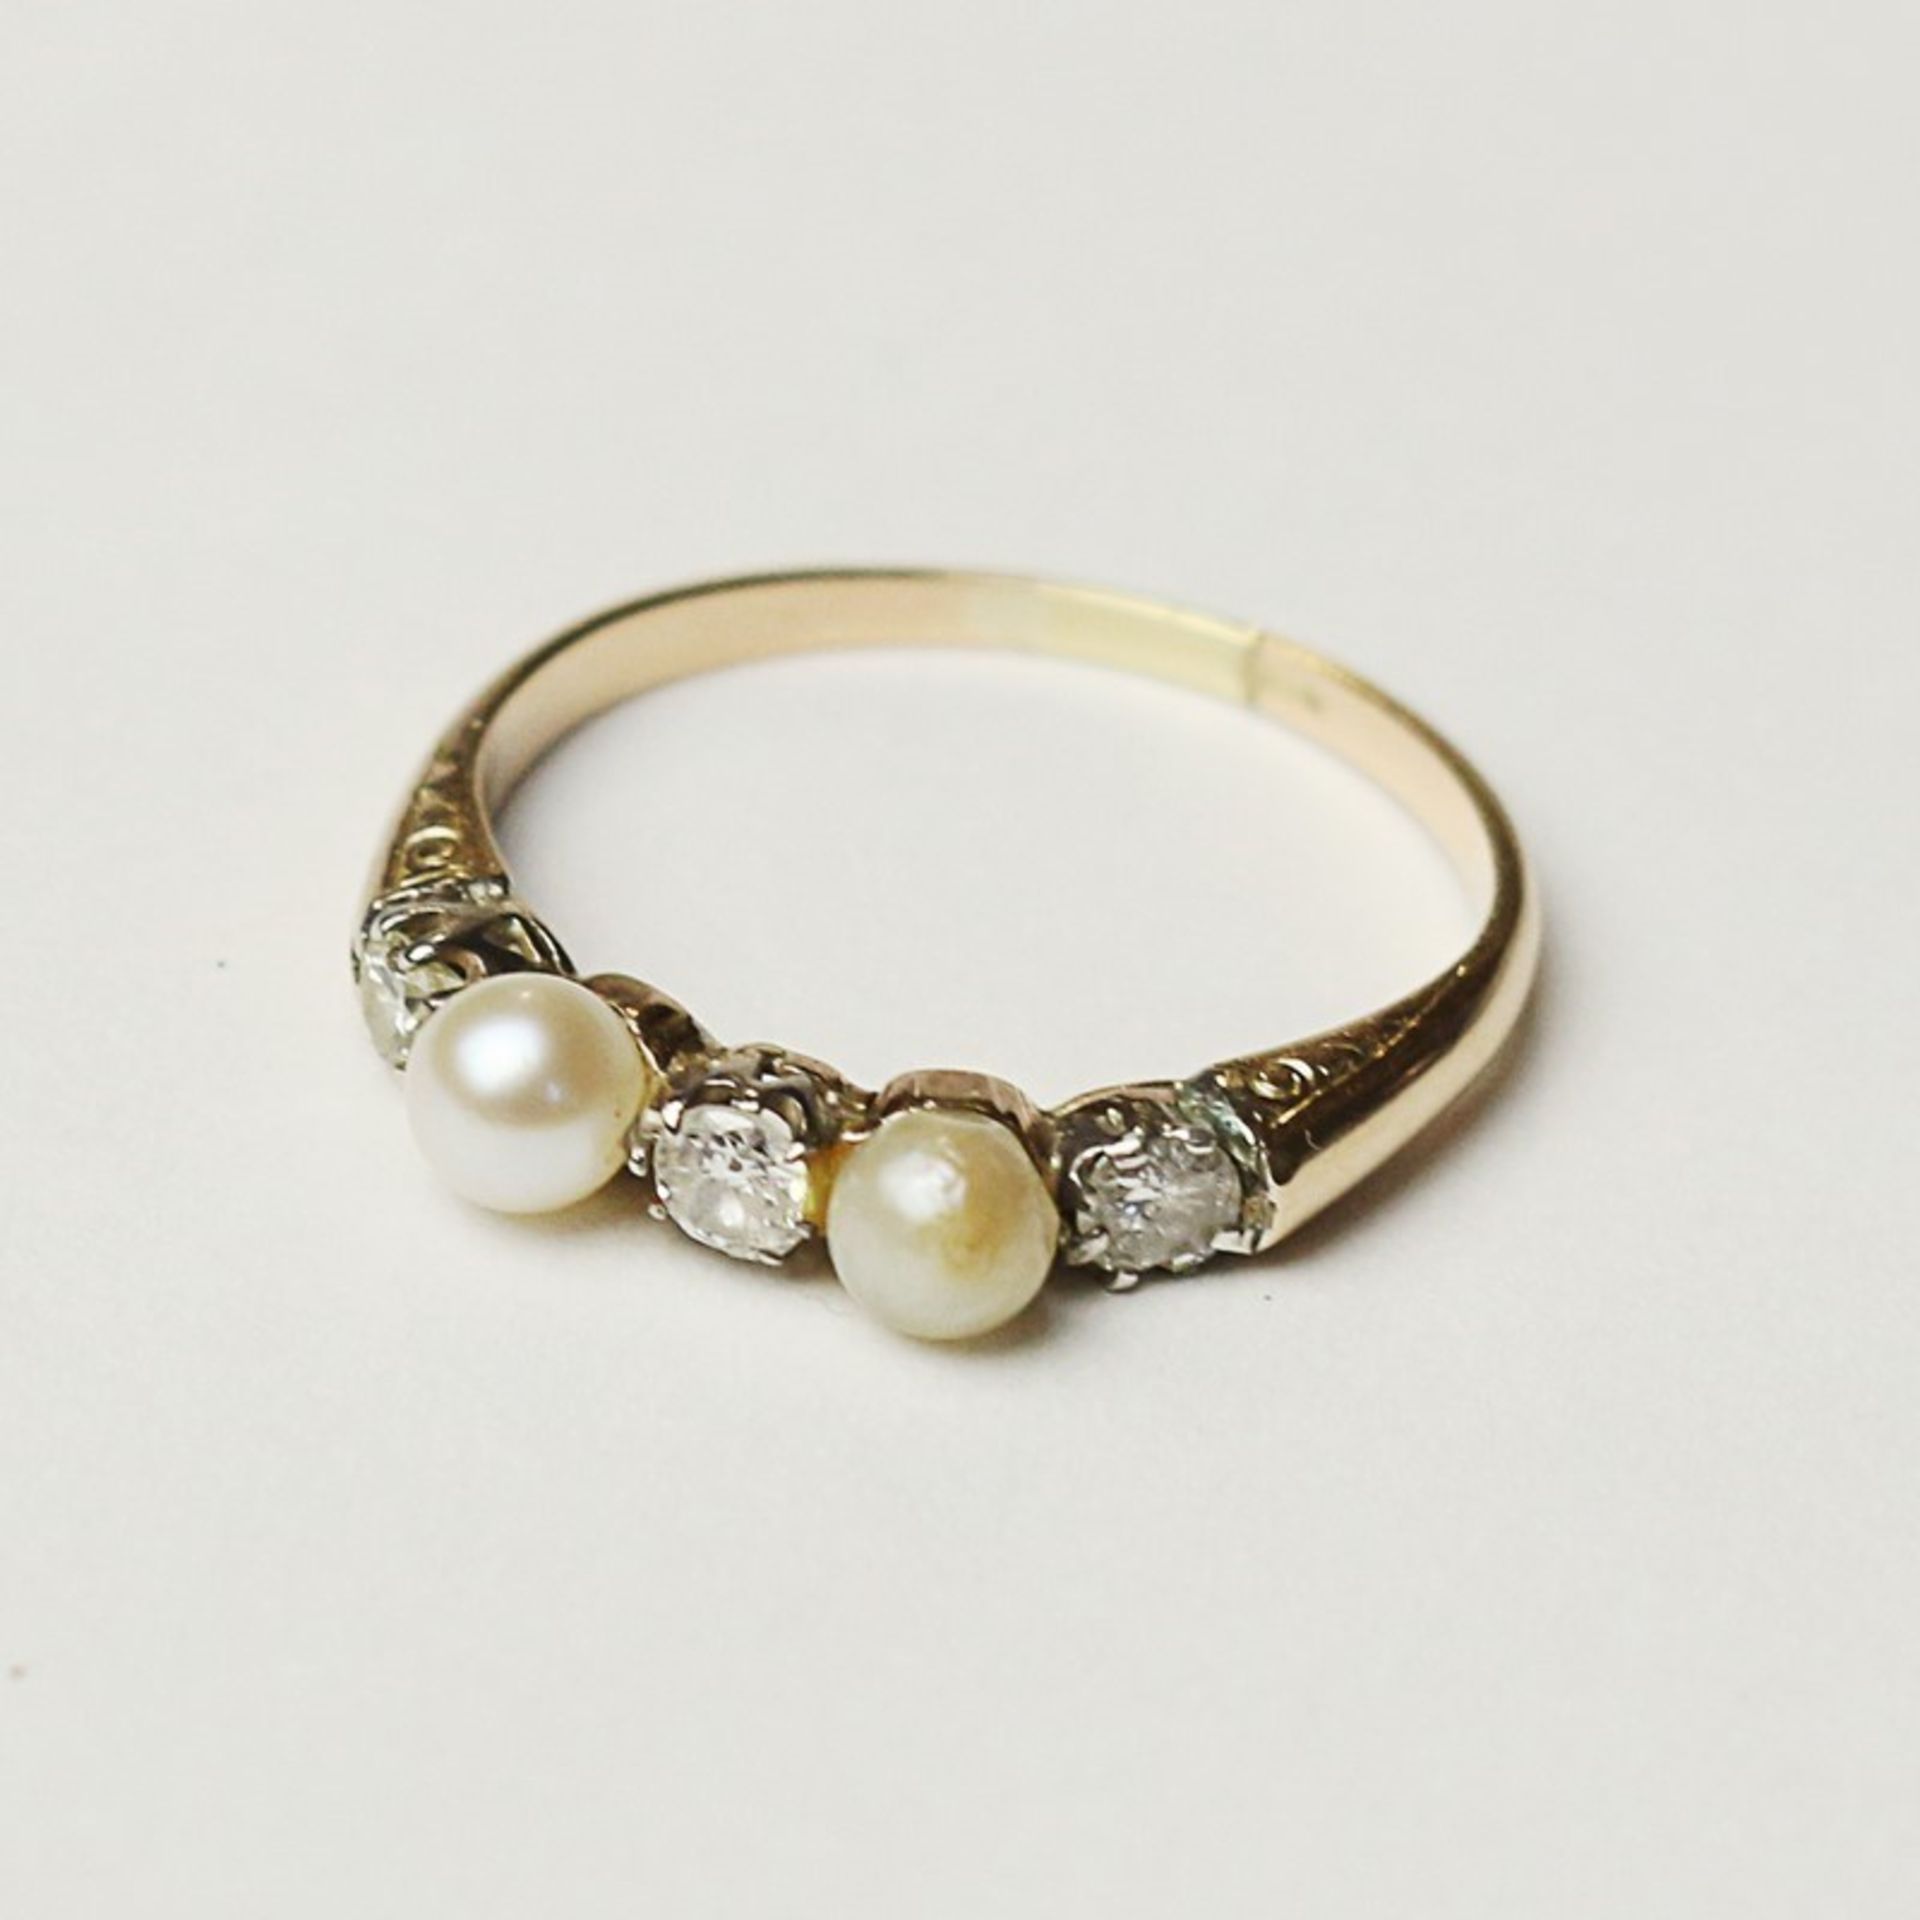 Perlen/Diamant - Damenring GG 585, Ringkopf besetzt mit 2 kl. Perlen, Dca.0,3, 1 davon mit Klebesp.,